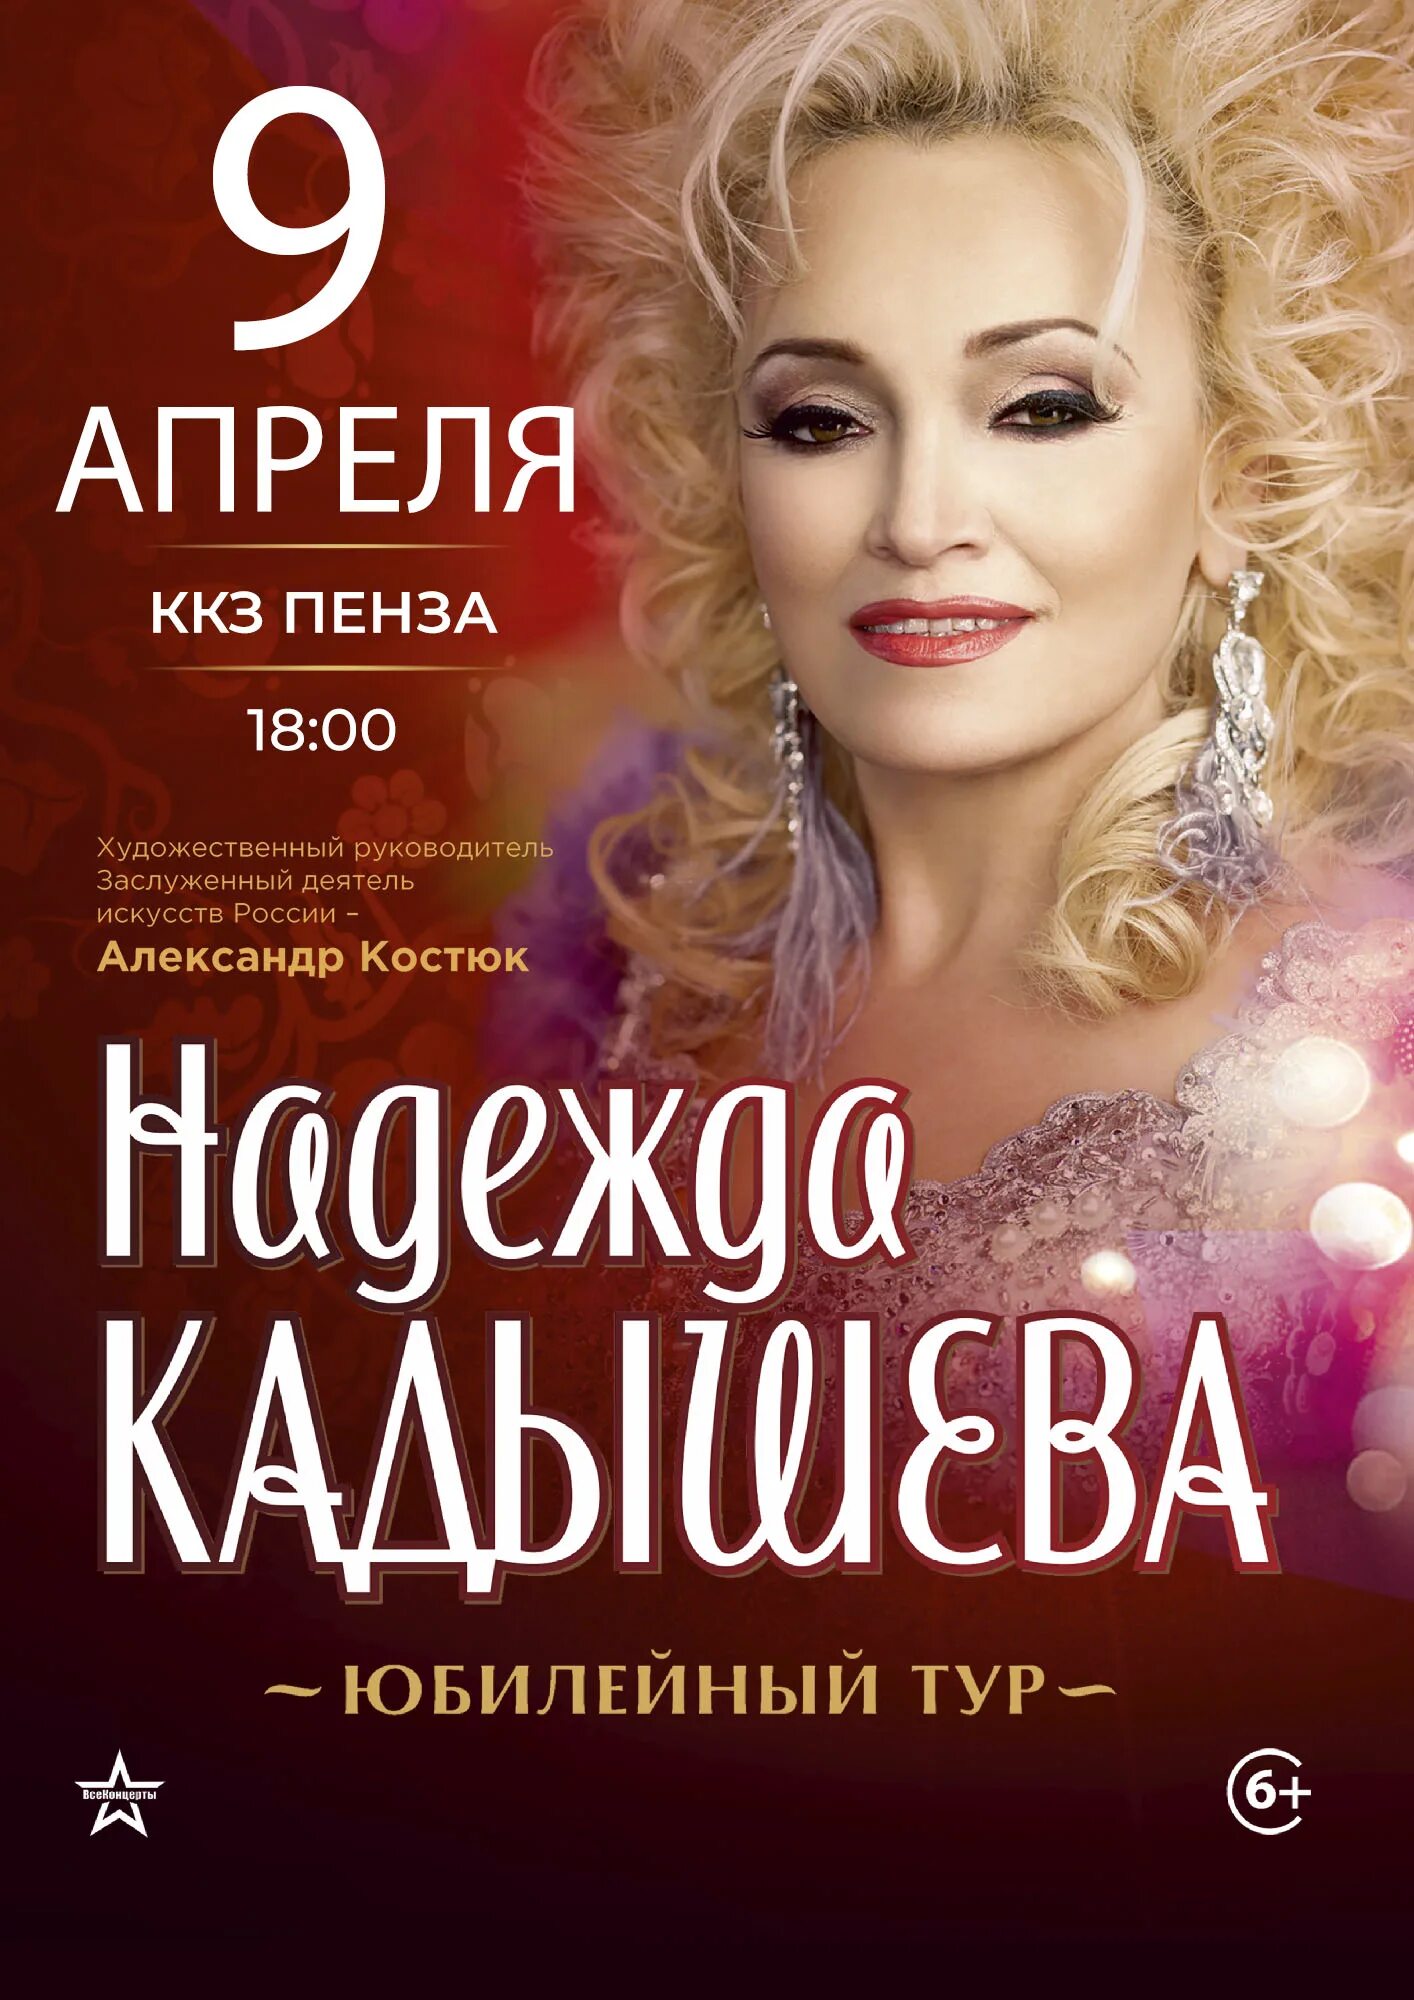 Концерт надежды Кадышевой золотое кольцо. Кадышева пенза купить билеты